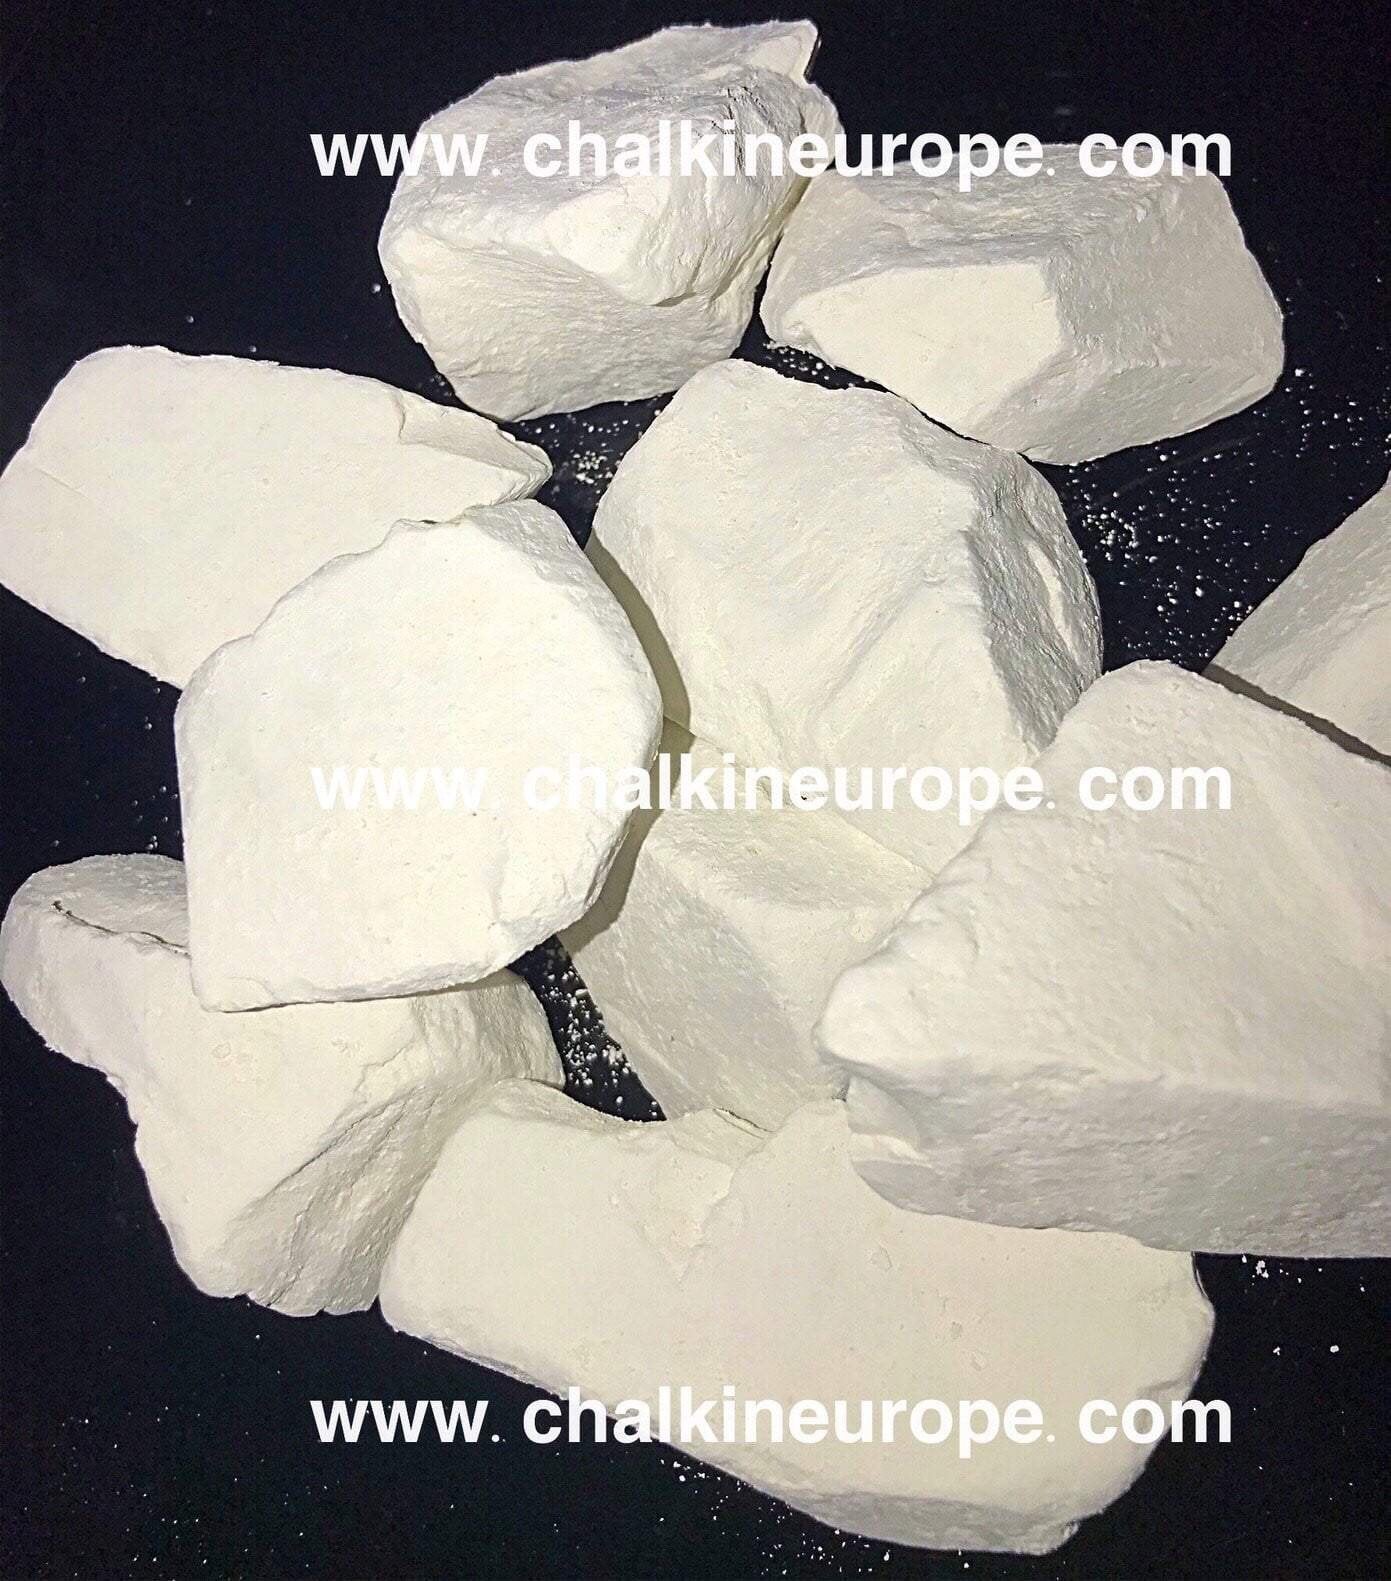 Edible chalk : KAMENKA edible Chalk chunks (lump) natural for eating (food)